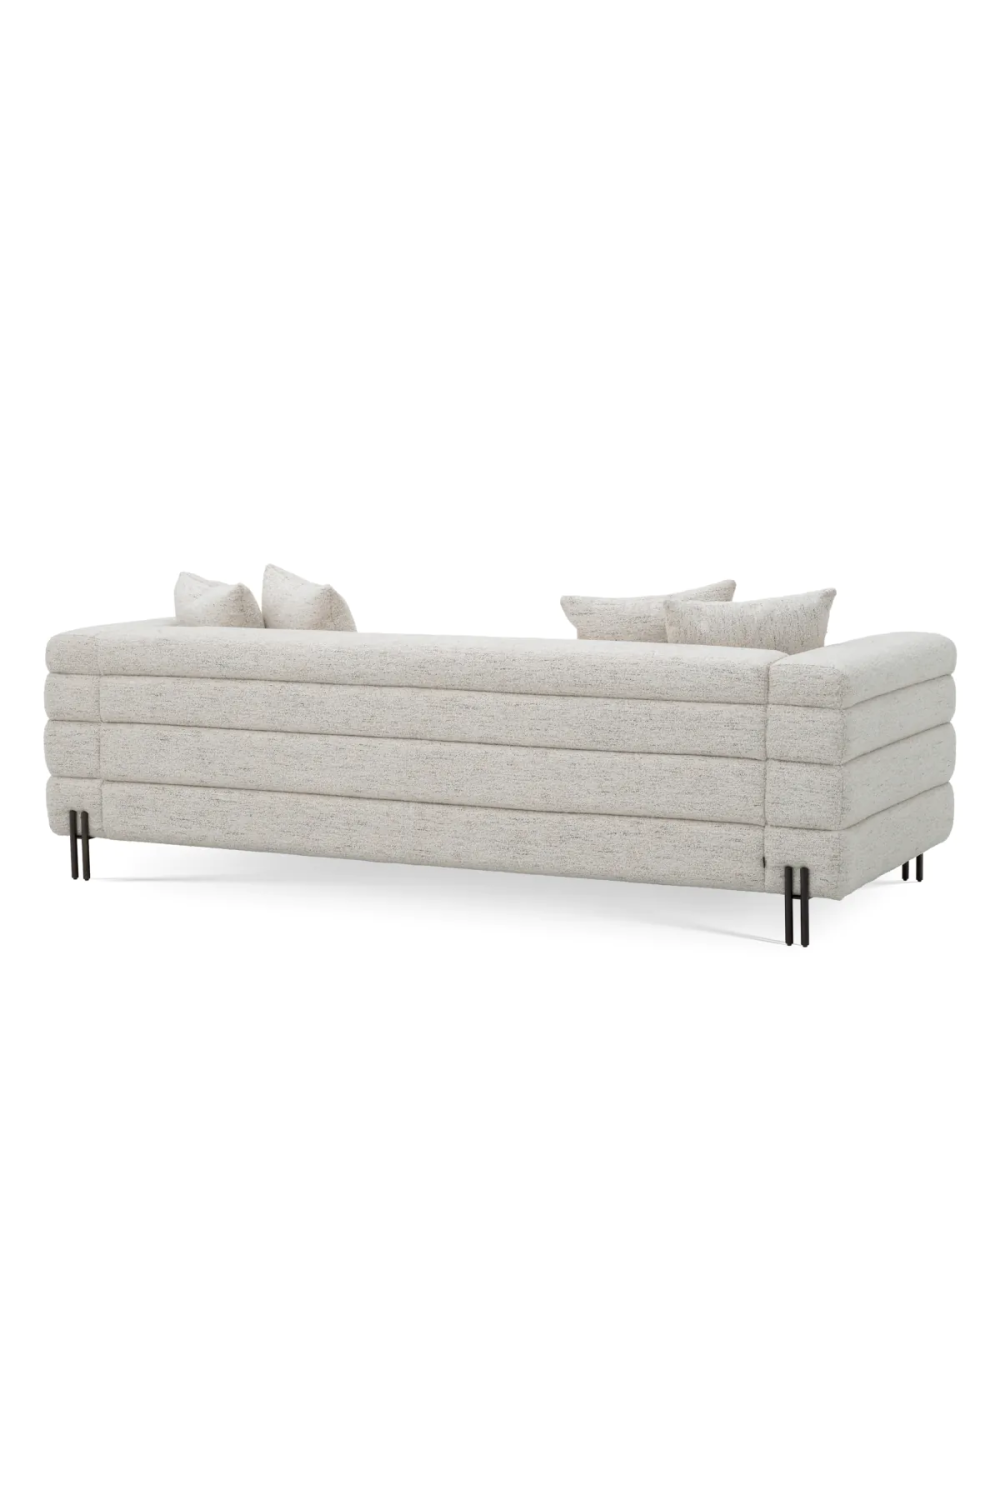 Off-White Fabric Sofa | Eichholtz York  | Oroa.com